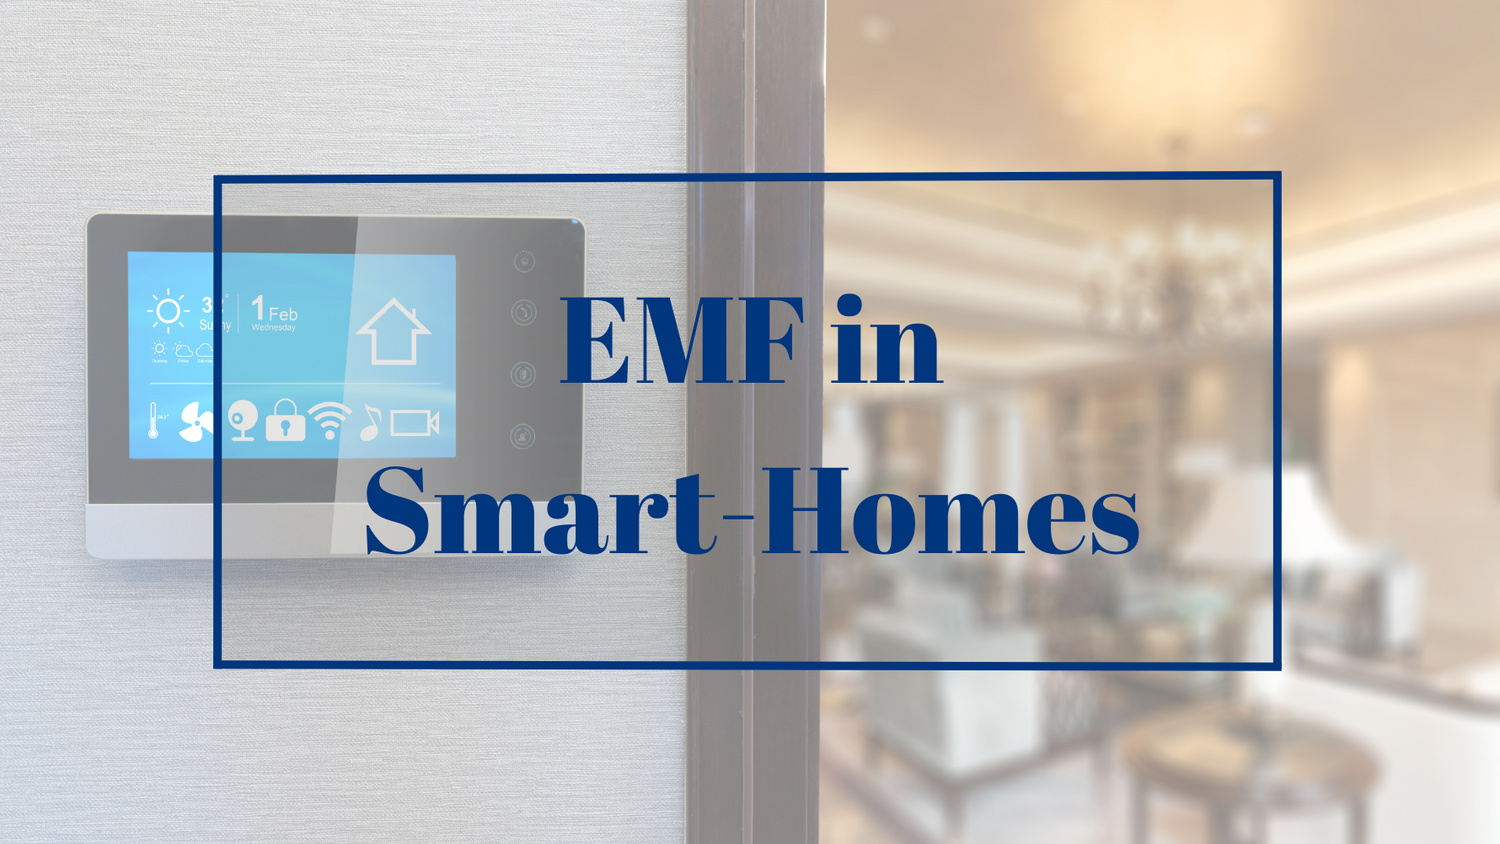 EMF in Smart Homes